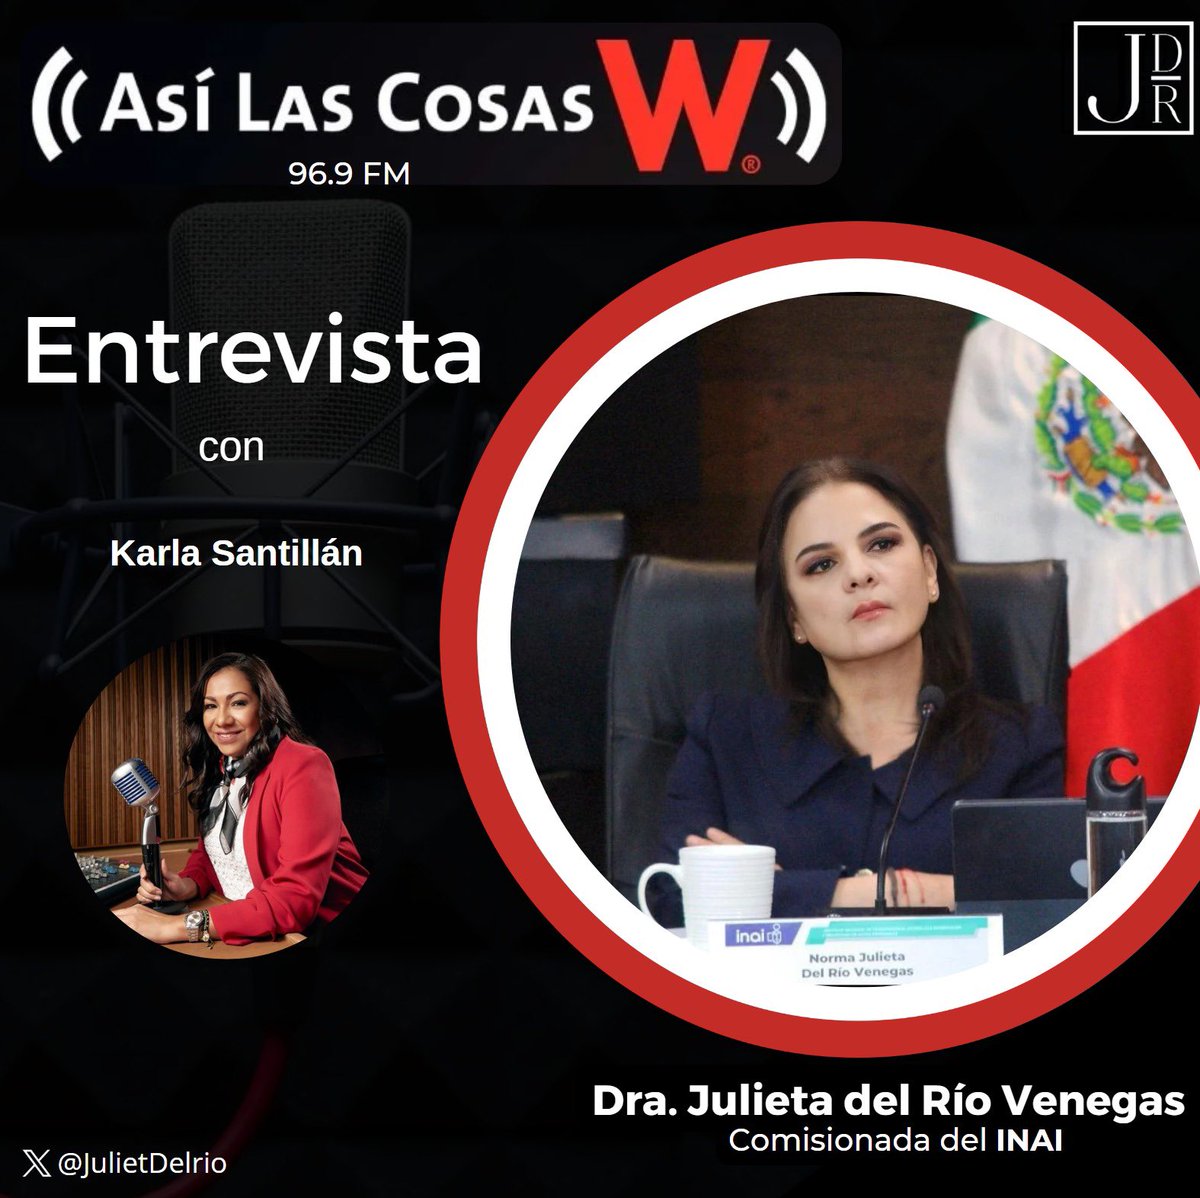 Ahora charlo con @KarlaSantillan_ en  W Radio  sobre los procesos que sigue el INAI cuando una autoridad pública exhibe información personal sin el consentimiento de sus titulares.
#EnVivo
play.wradio.com.mx